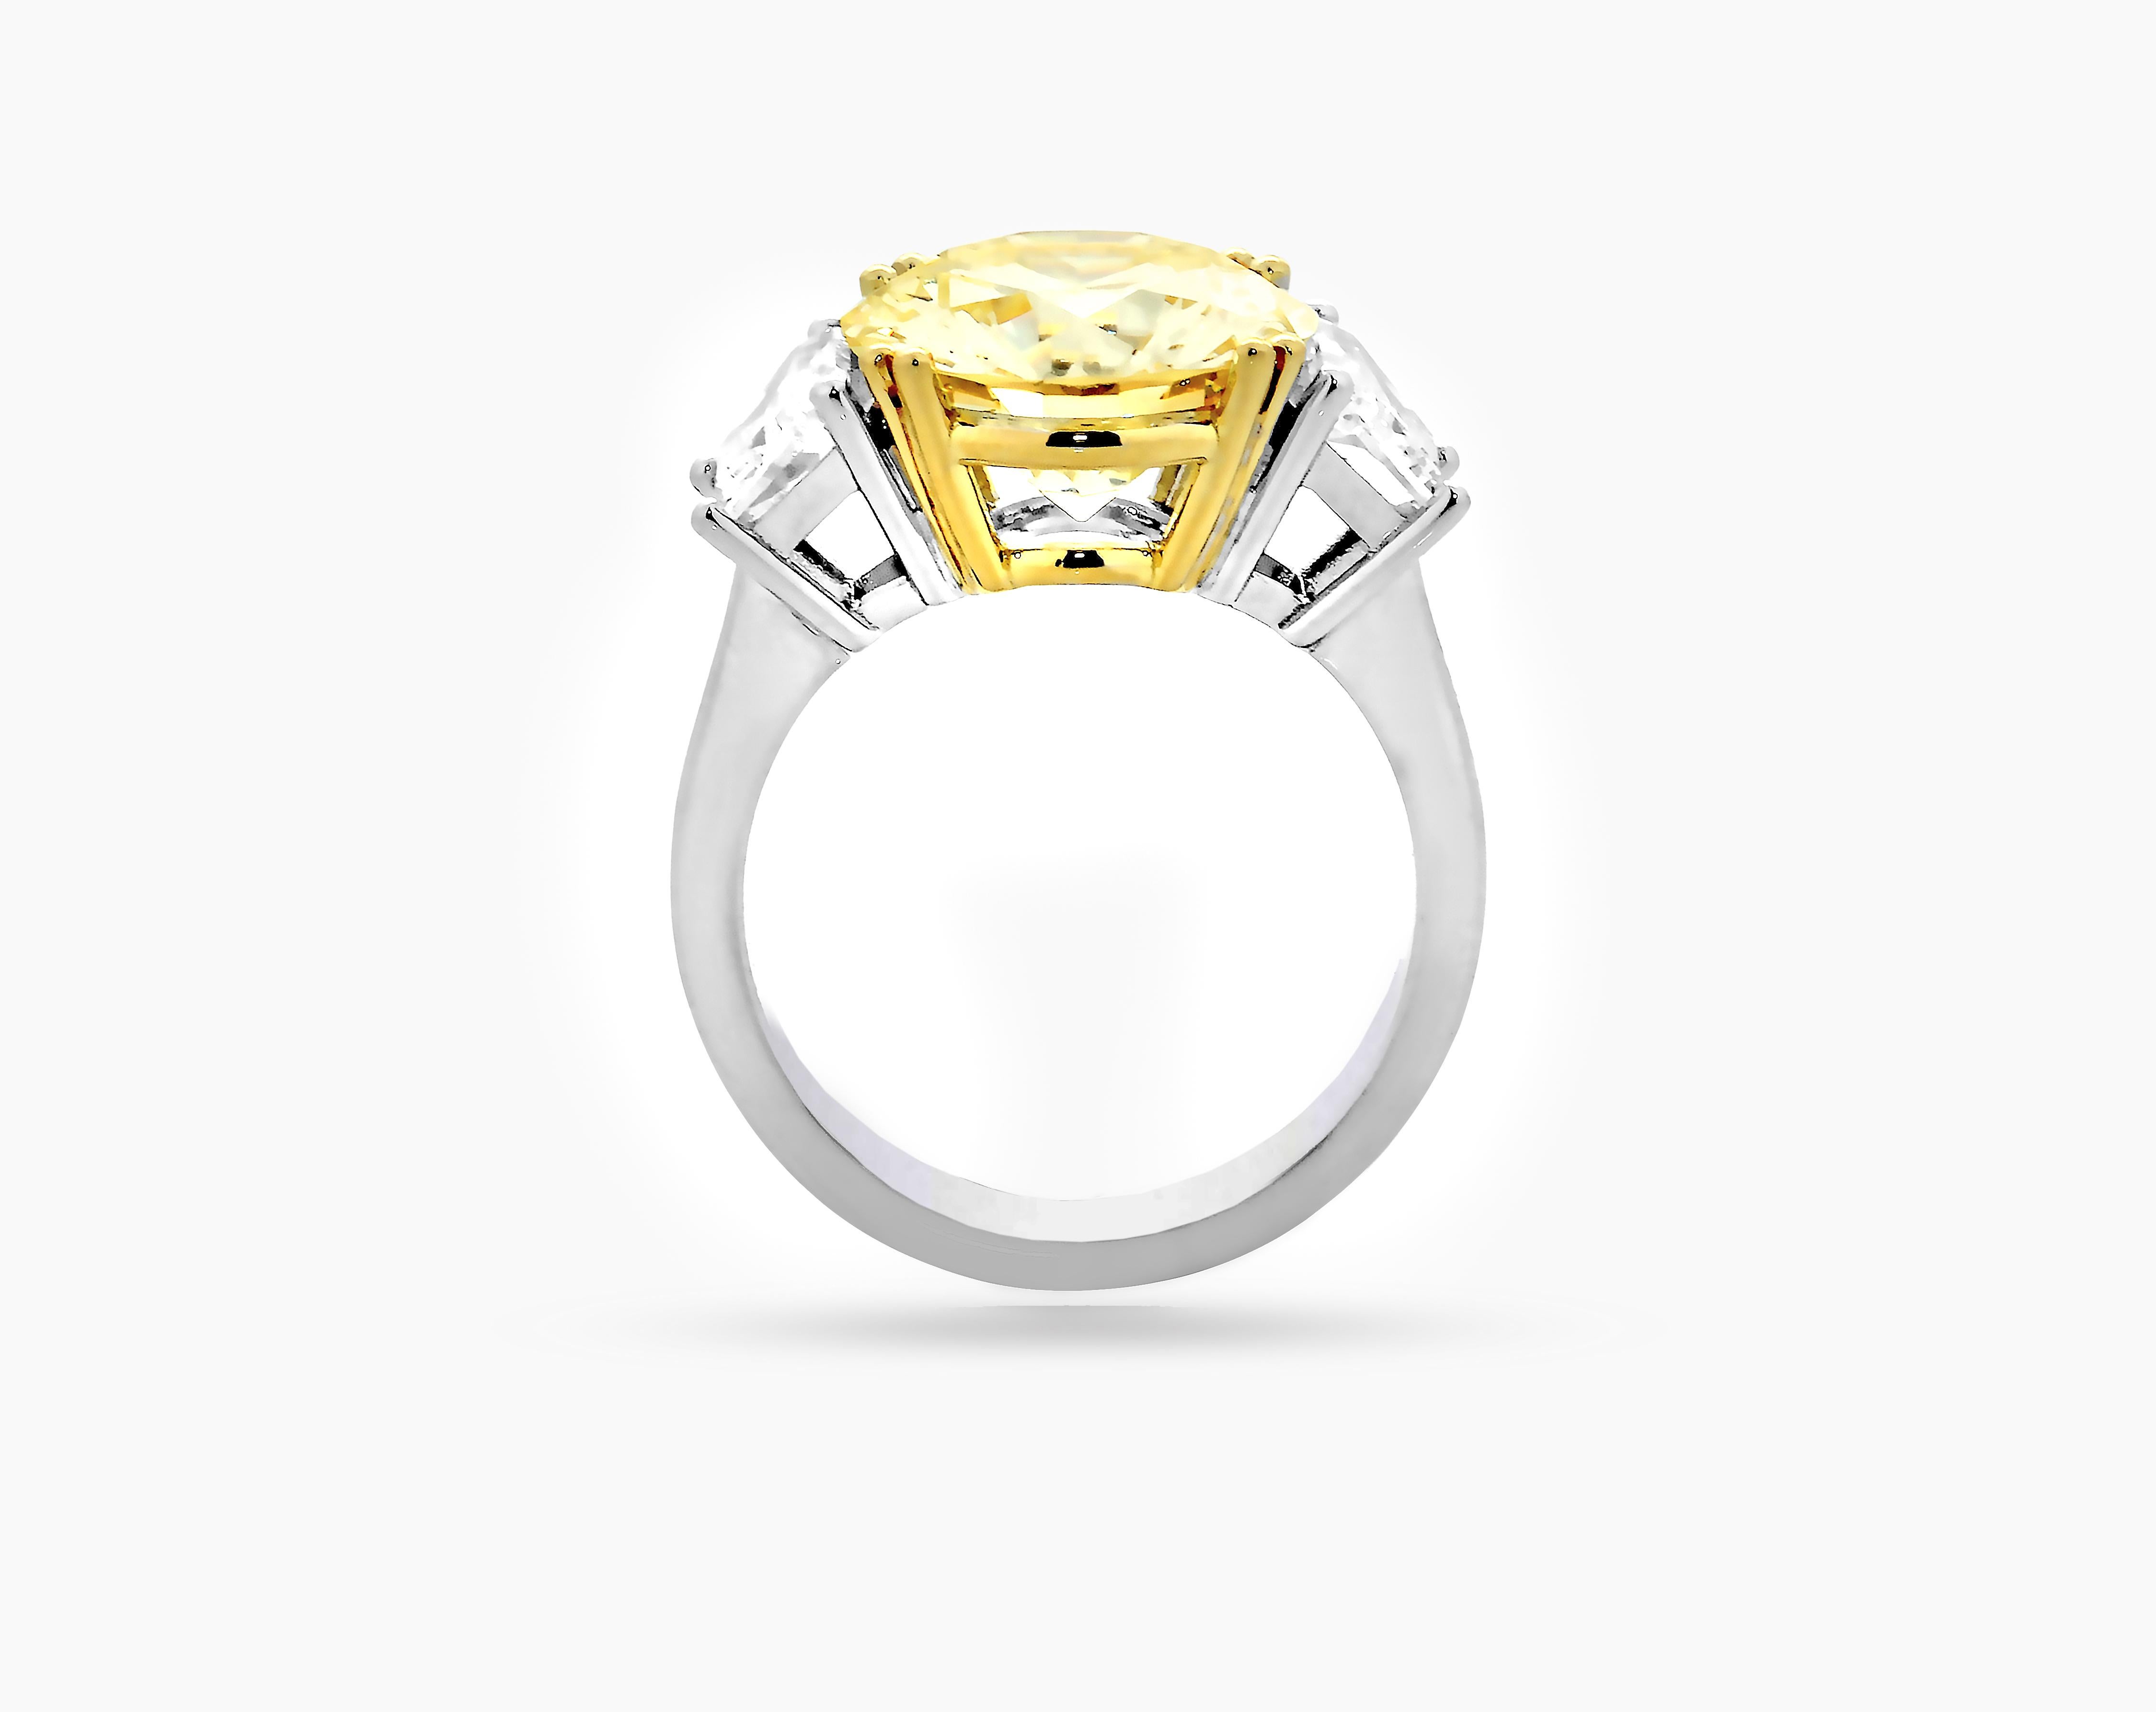 IGI (International Gemological Institute, Antwerpen) zertifizierter 5,58 Karat Light Yellow VVS2 runder Diamant 3 Steine Verlobungsring. Verlobungsring mit rundem Brillantschliff und hellgelbem VVS2 Mittelstein von CARON Fine jewellery.

Ein sehr